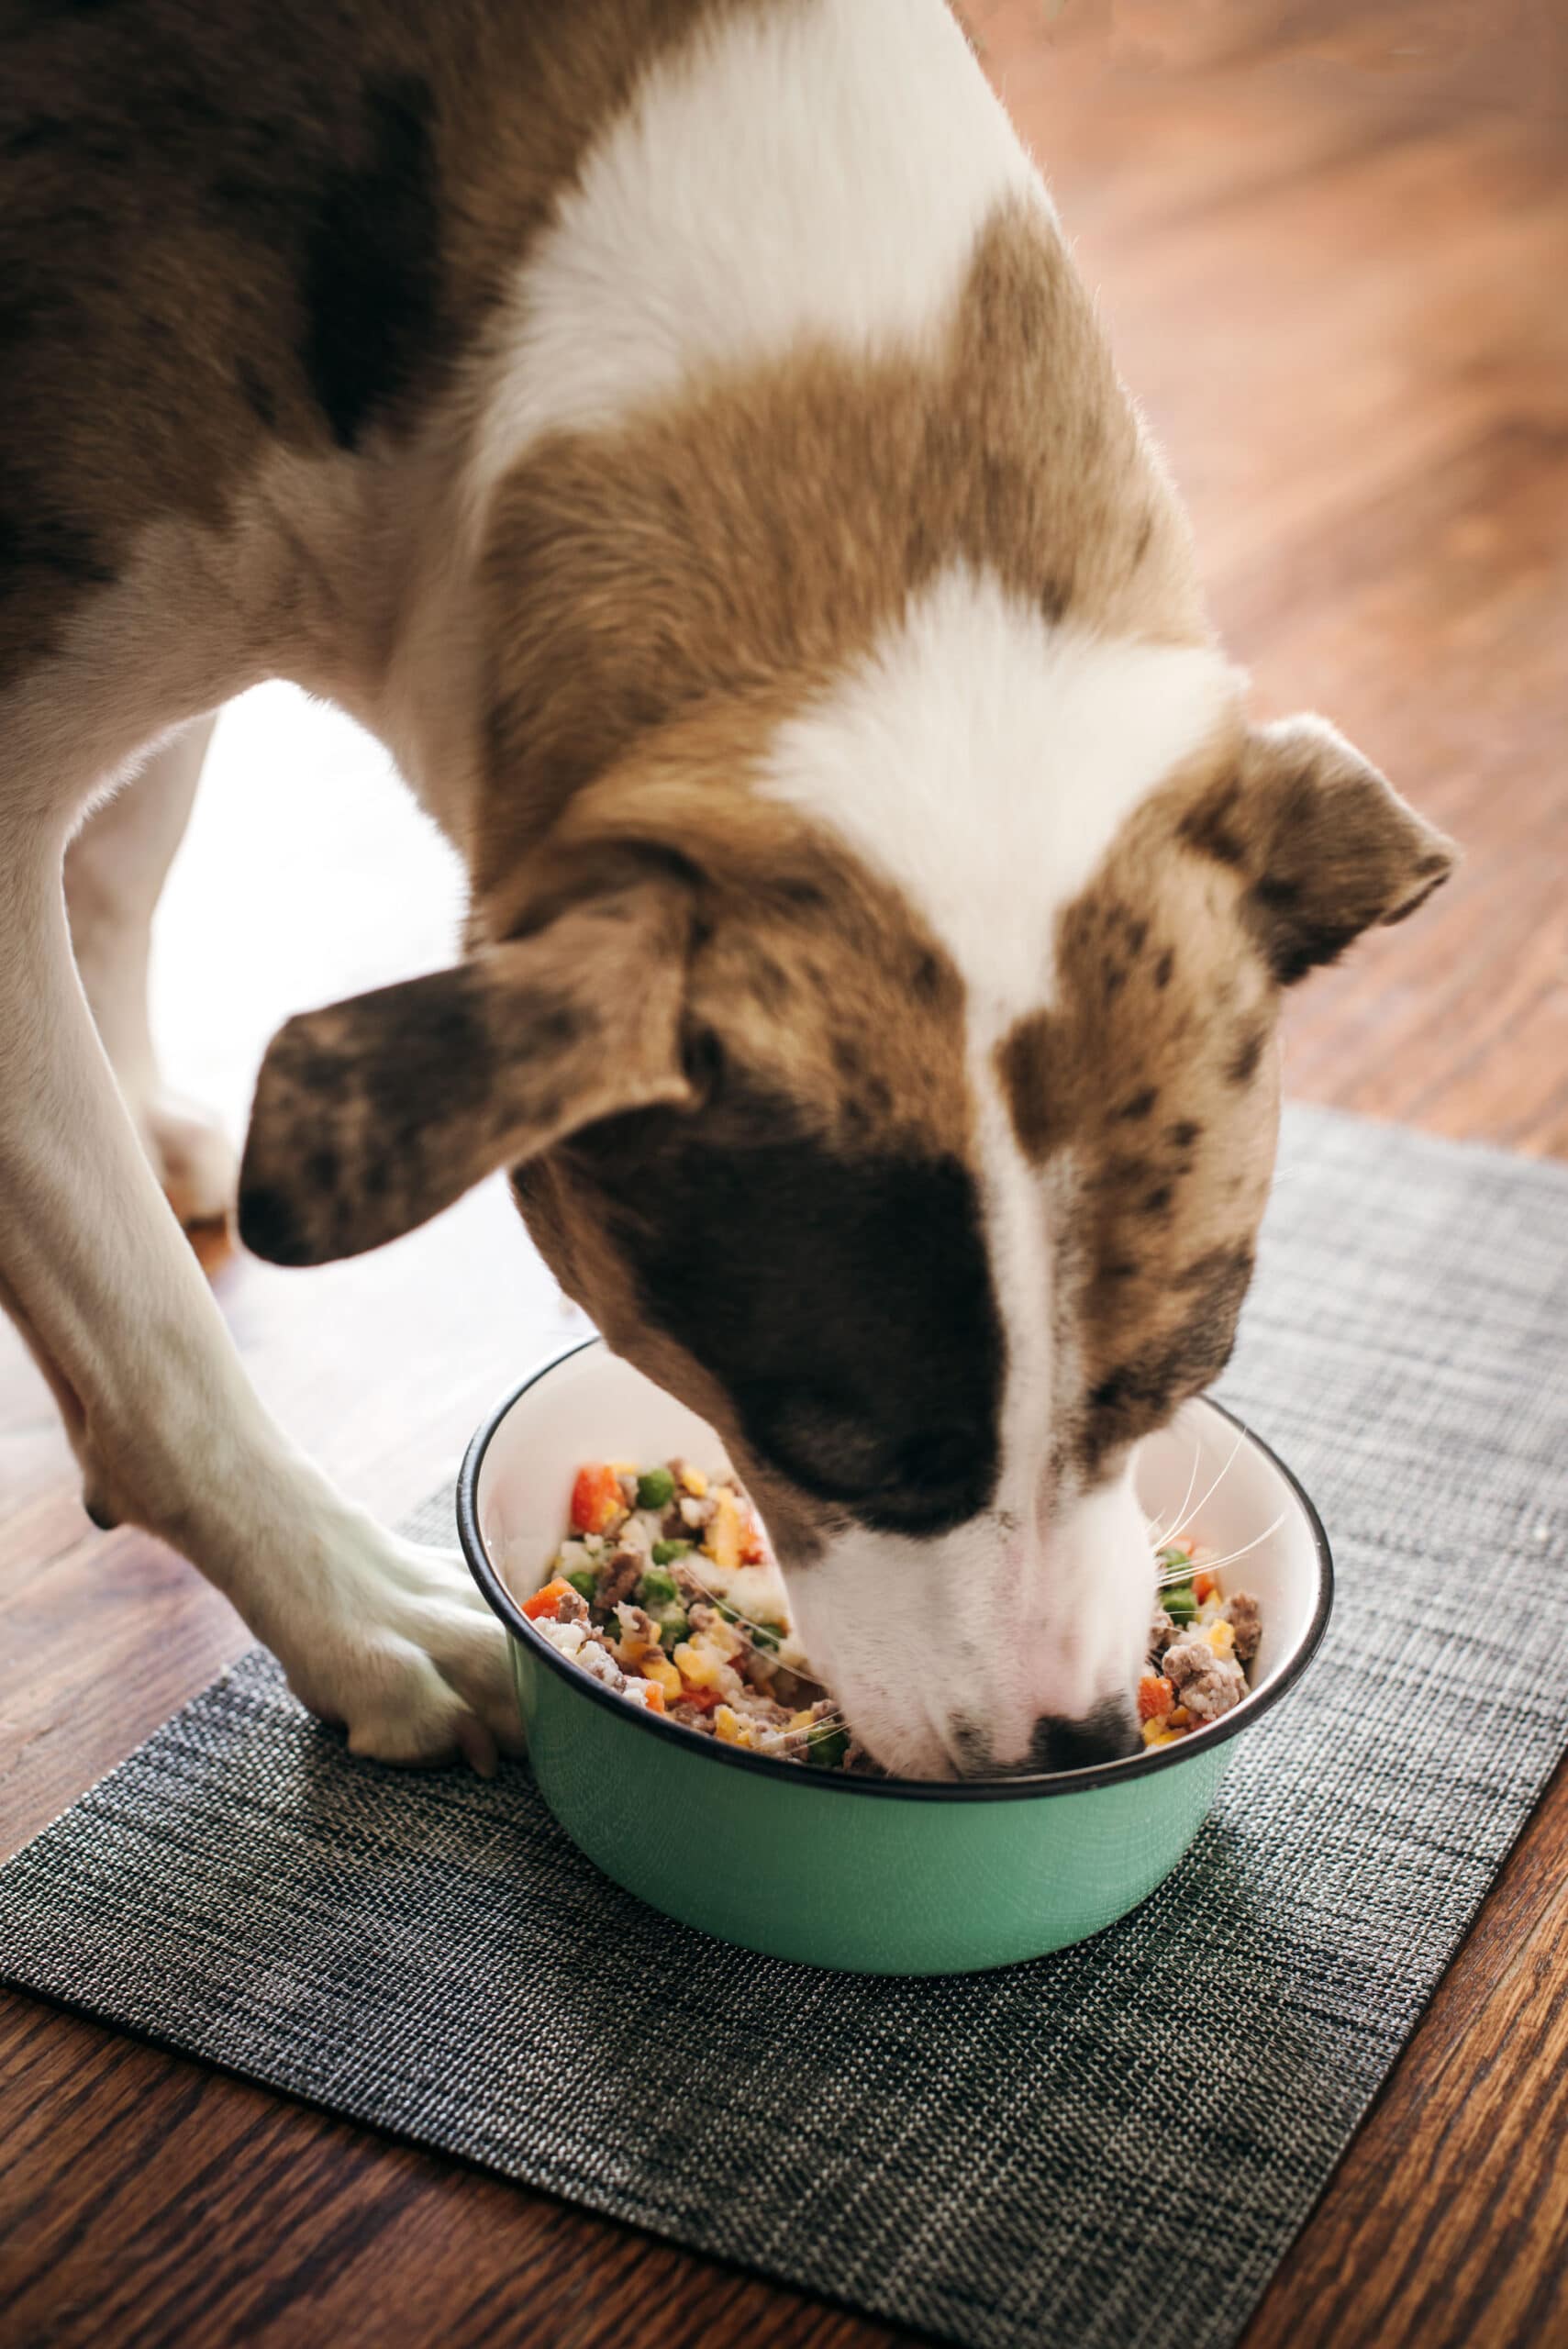 Dog Bijou enjoying dinner in her food bowl